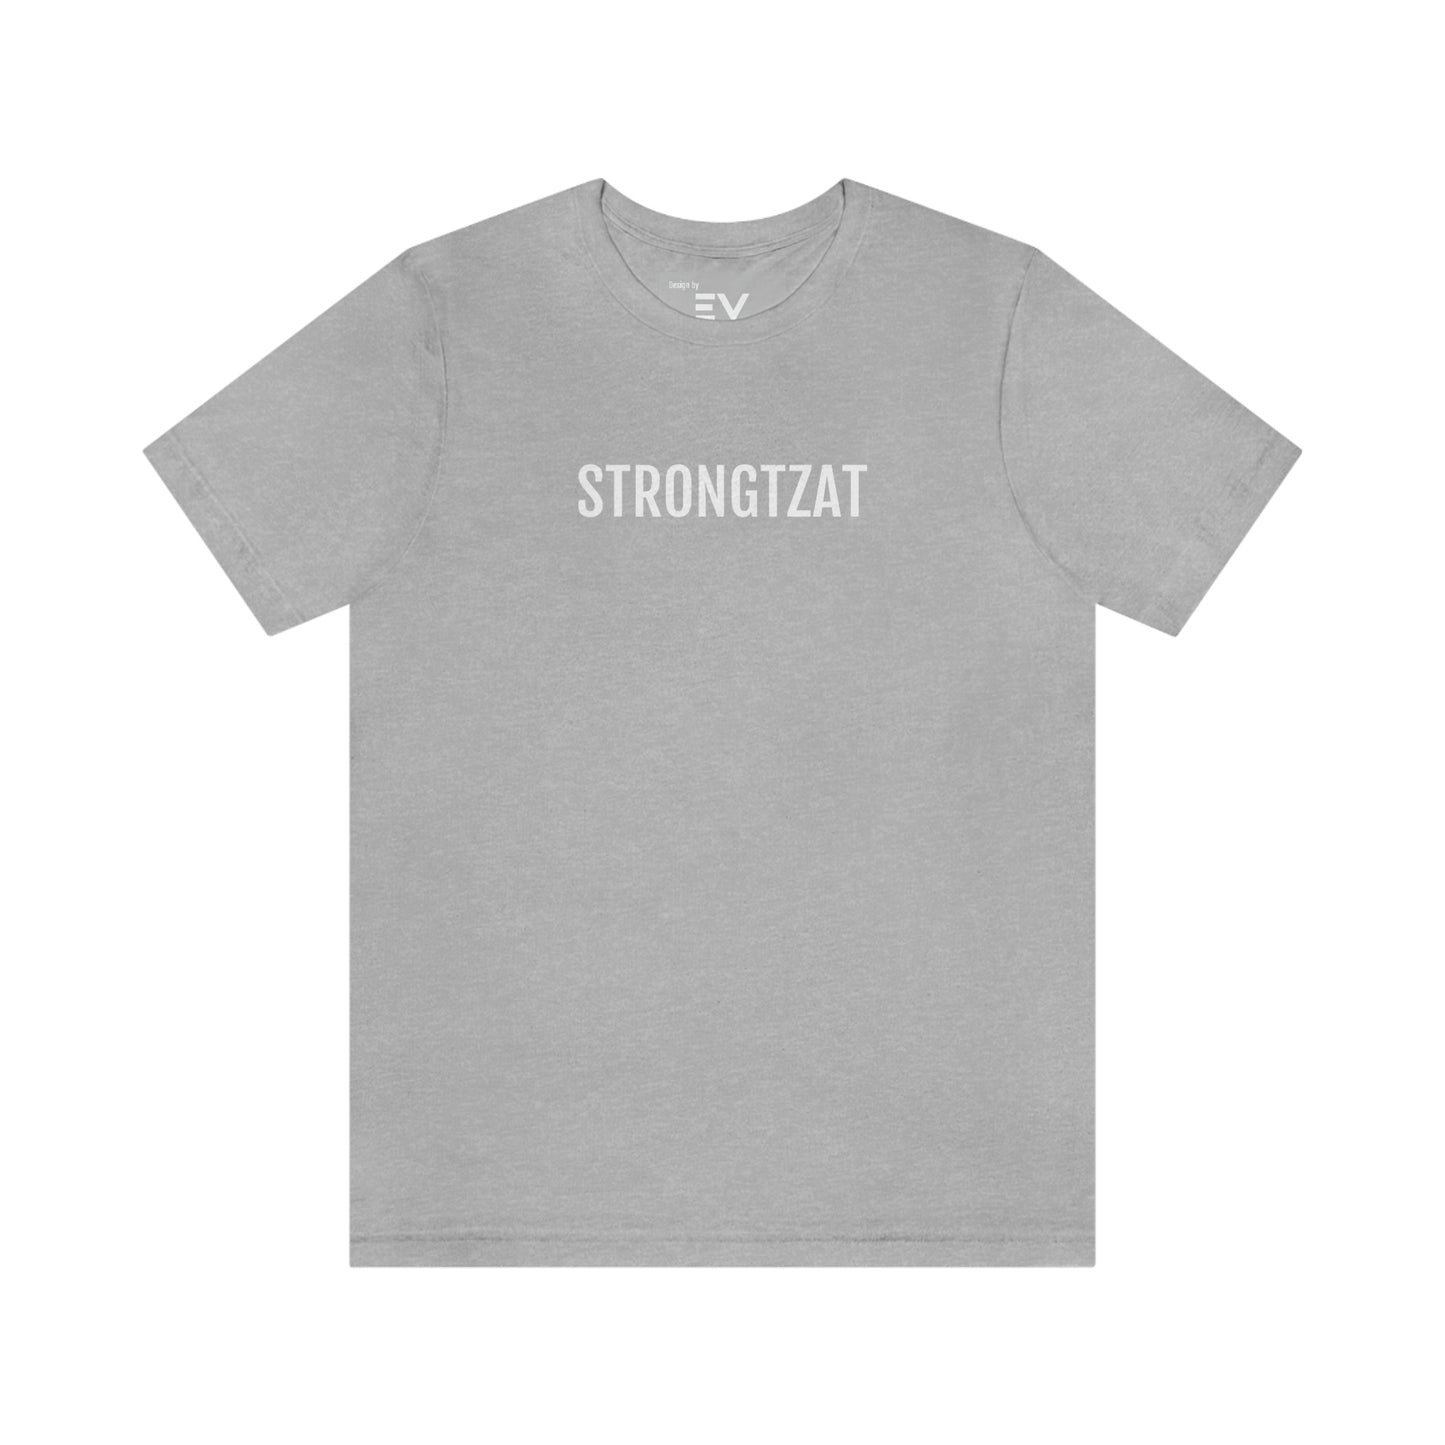 Strongtzat | Unisex T-Shirt uit Oost-Vlaanderen - Grijs